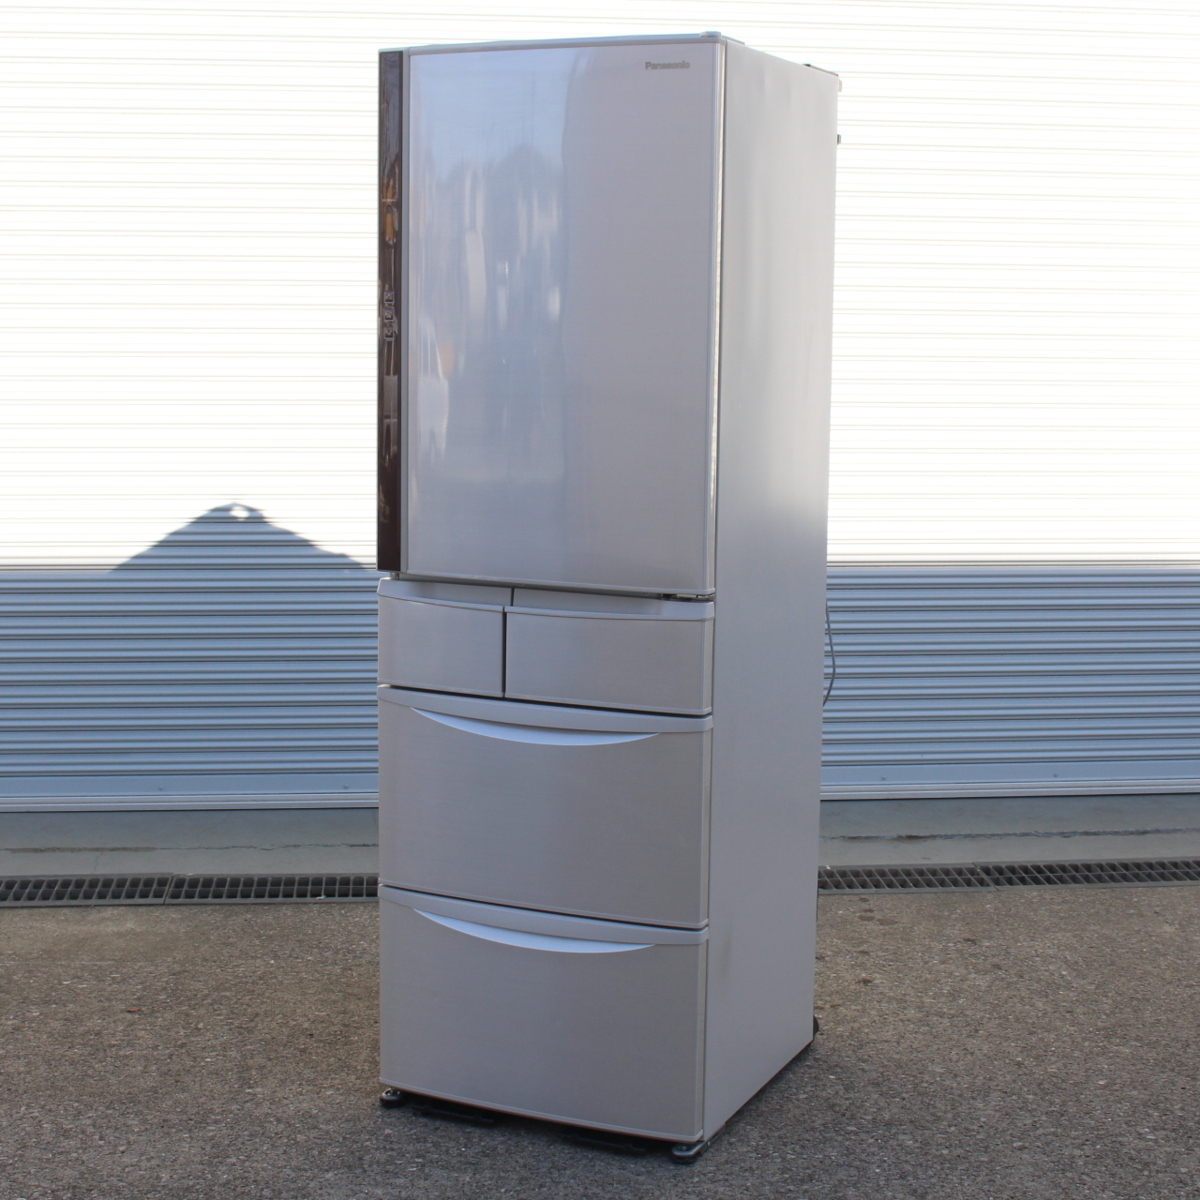 パナソニック ノンフロン冷凍冷蔵庫 NR-E431V-N 411L 2016年製 5ドア 右開き トップユニット方式